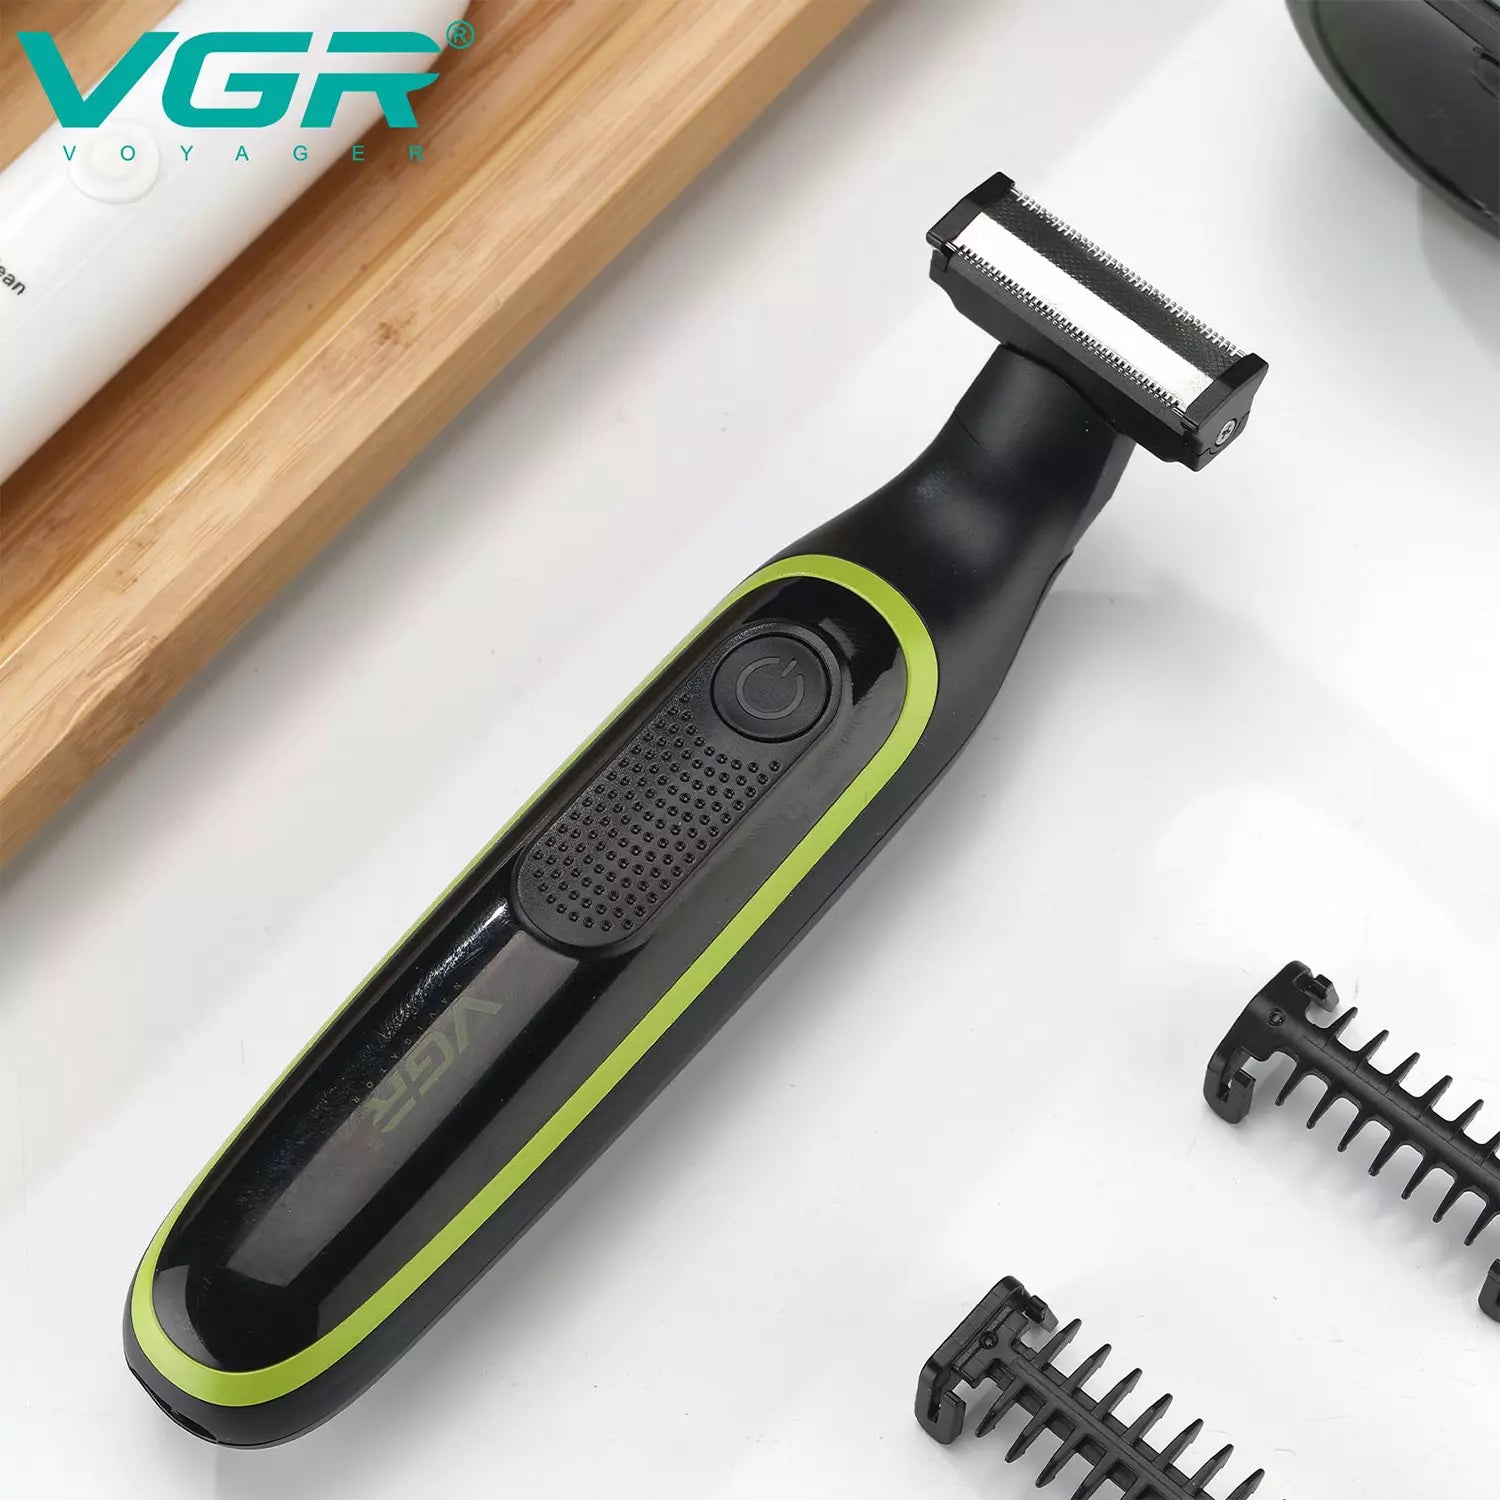 VGR-V-017-Men's-Electric-Beard-Shaver-Black